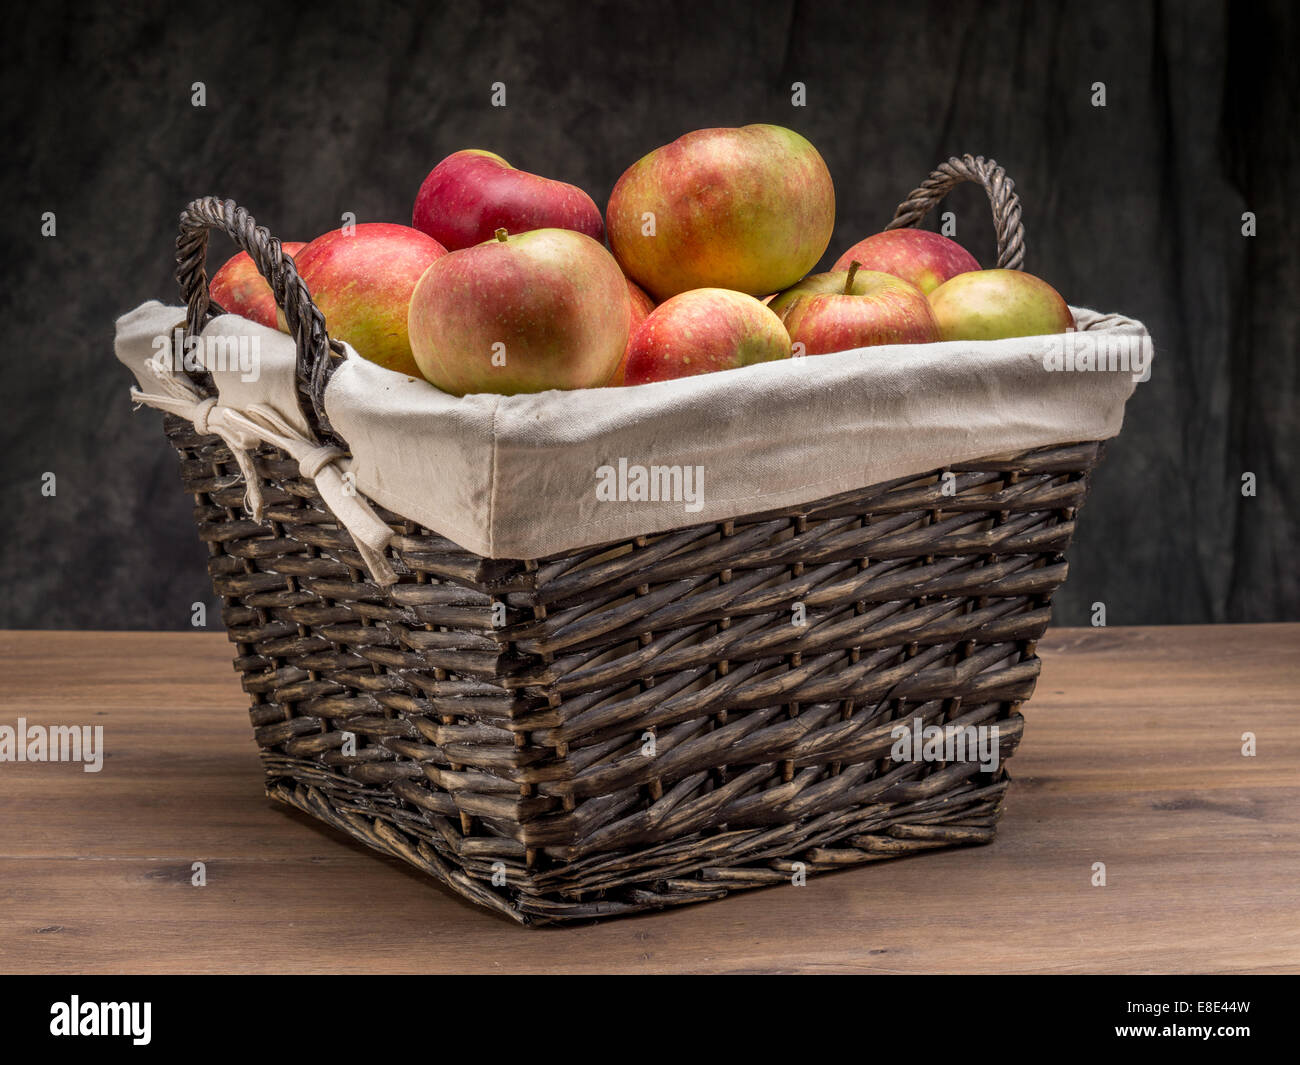 Panier en osier rempli de pommes delicious tourné sur fond gris foncé Banque D'Images